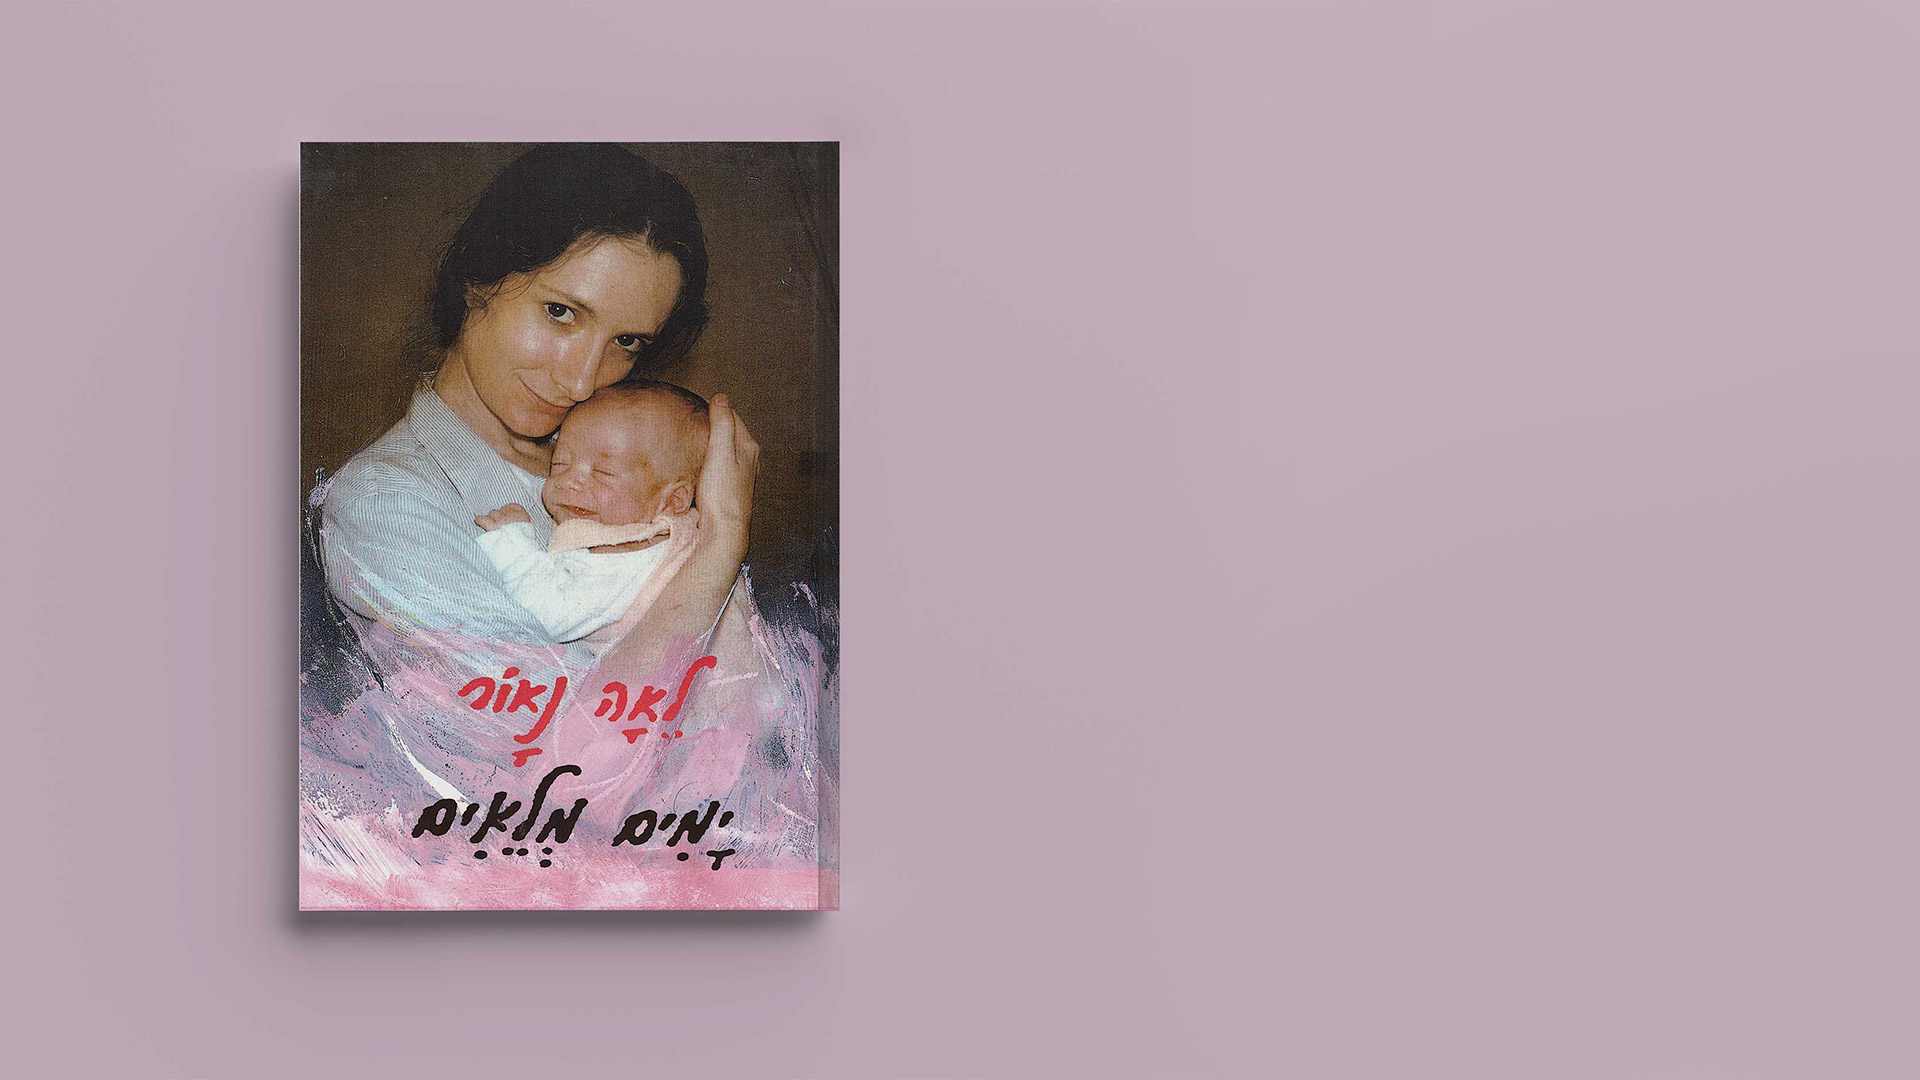 בספר השירים של לאה נאור 'ימים מלאים' יש שירים על הריון ועל לידה, שירים על פלאי ההריון, על הכאב והשמחה שבלידה, וגם על הפגישה הזהירה והמשתאה עם הרך הנולד.